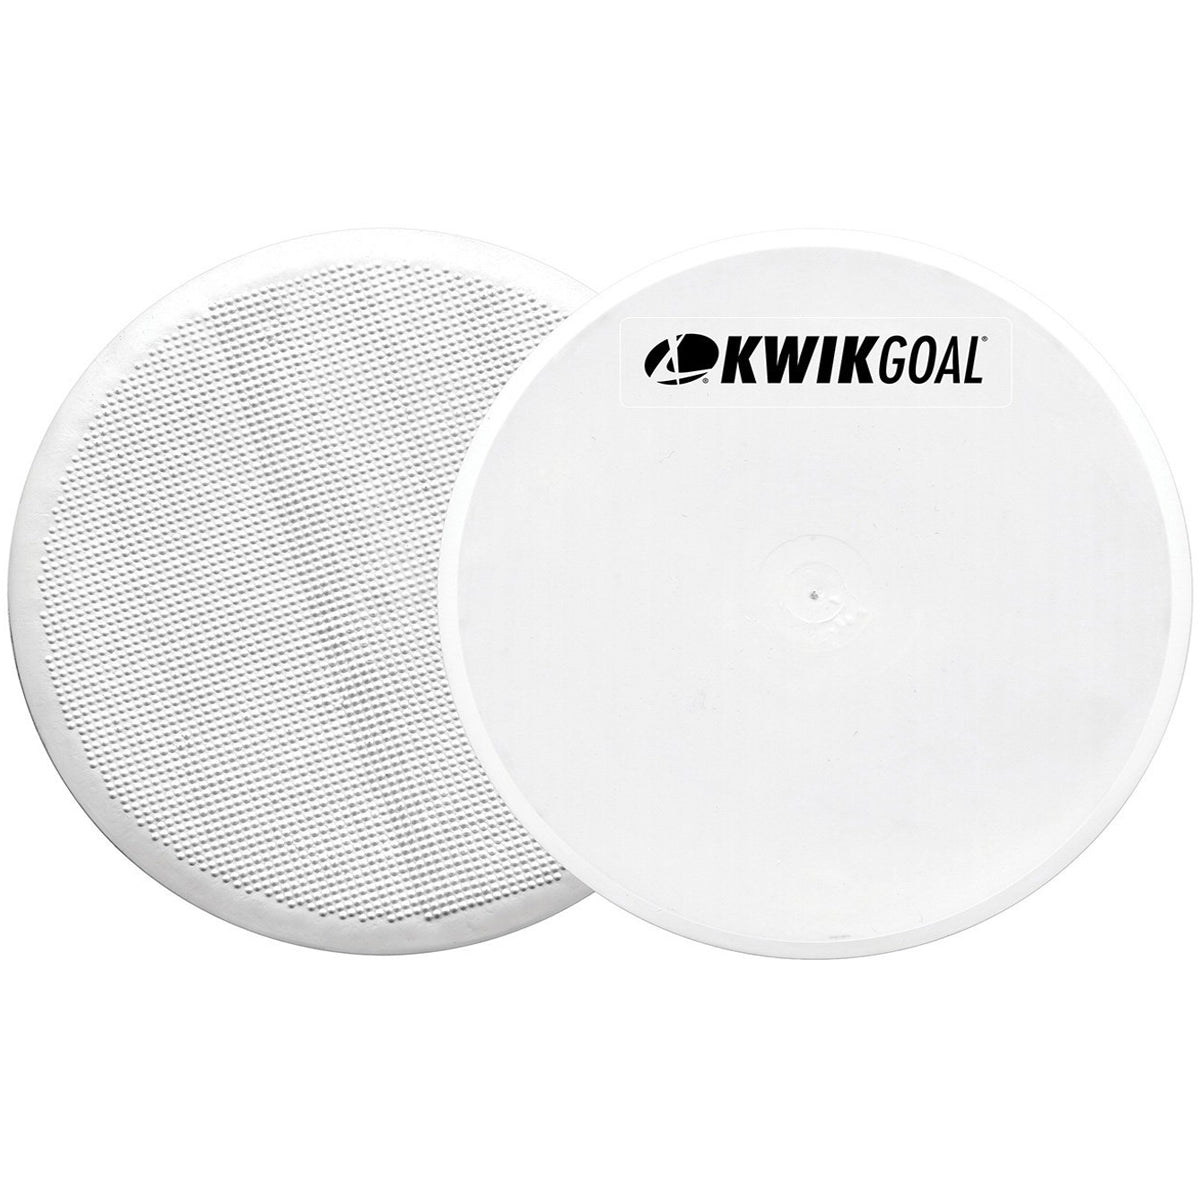 Kwikgoal Flat Round Markers | 16A29 Field equipment Kwikgoal White 